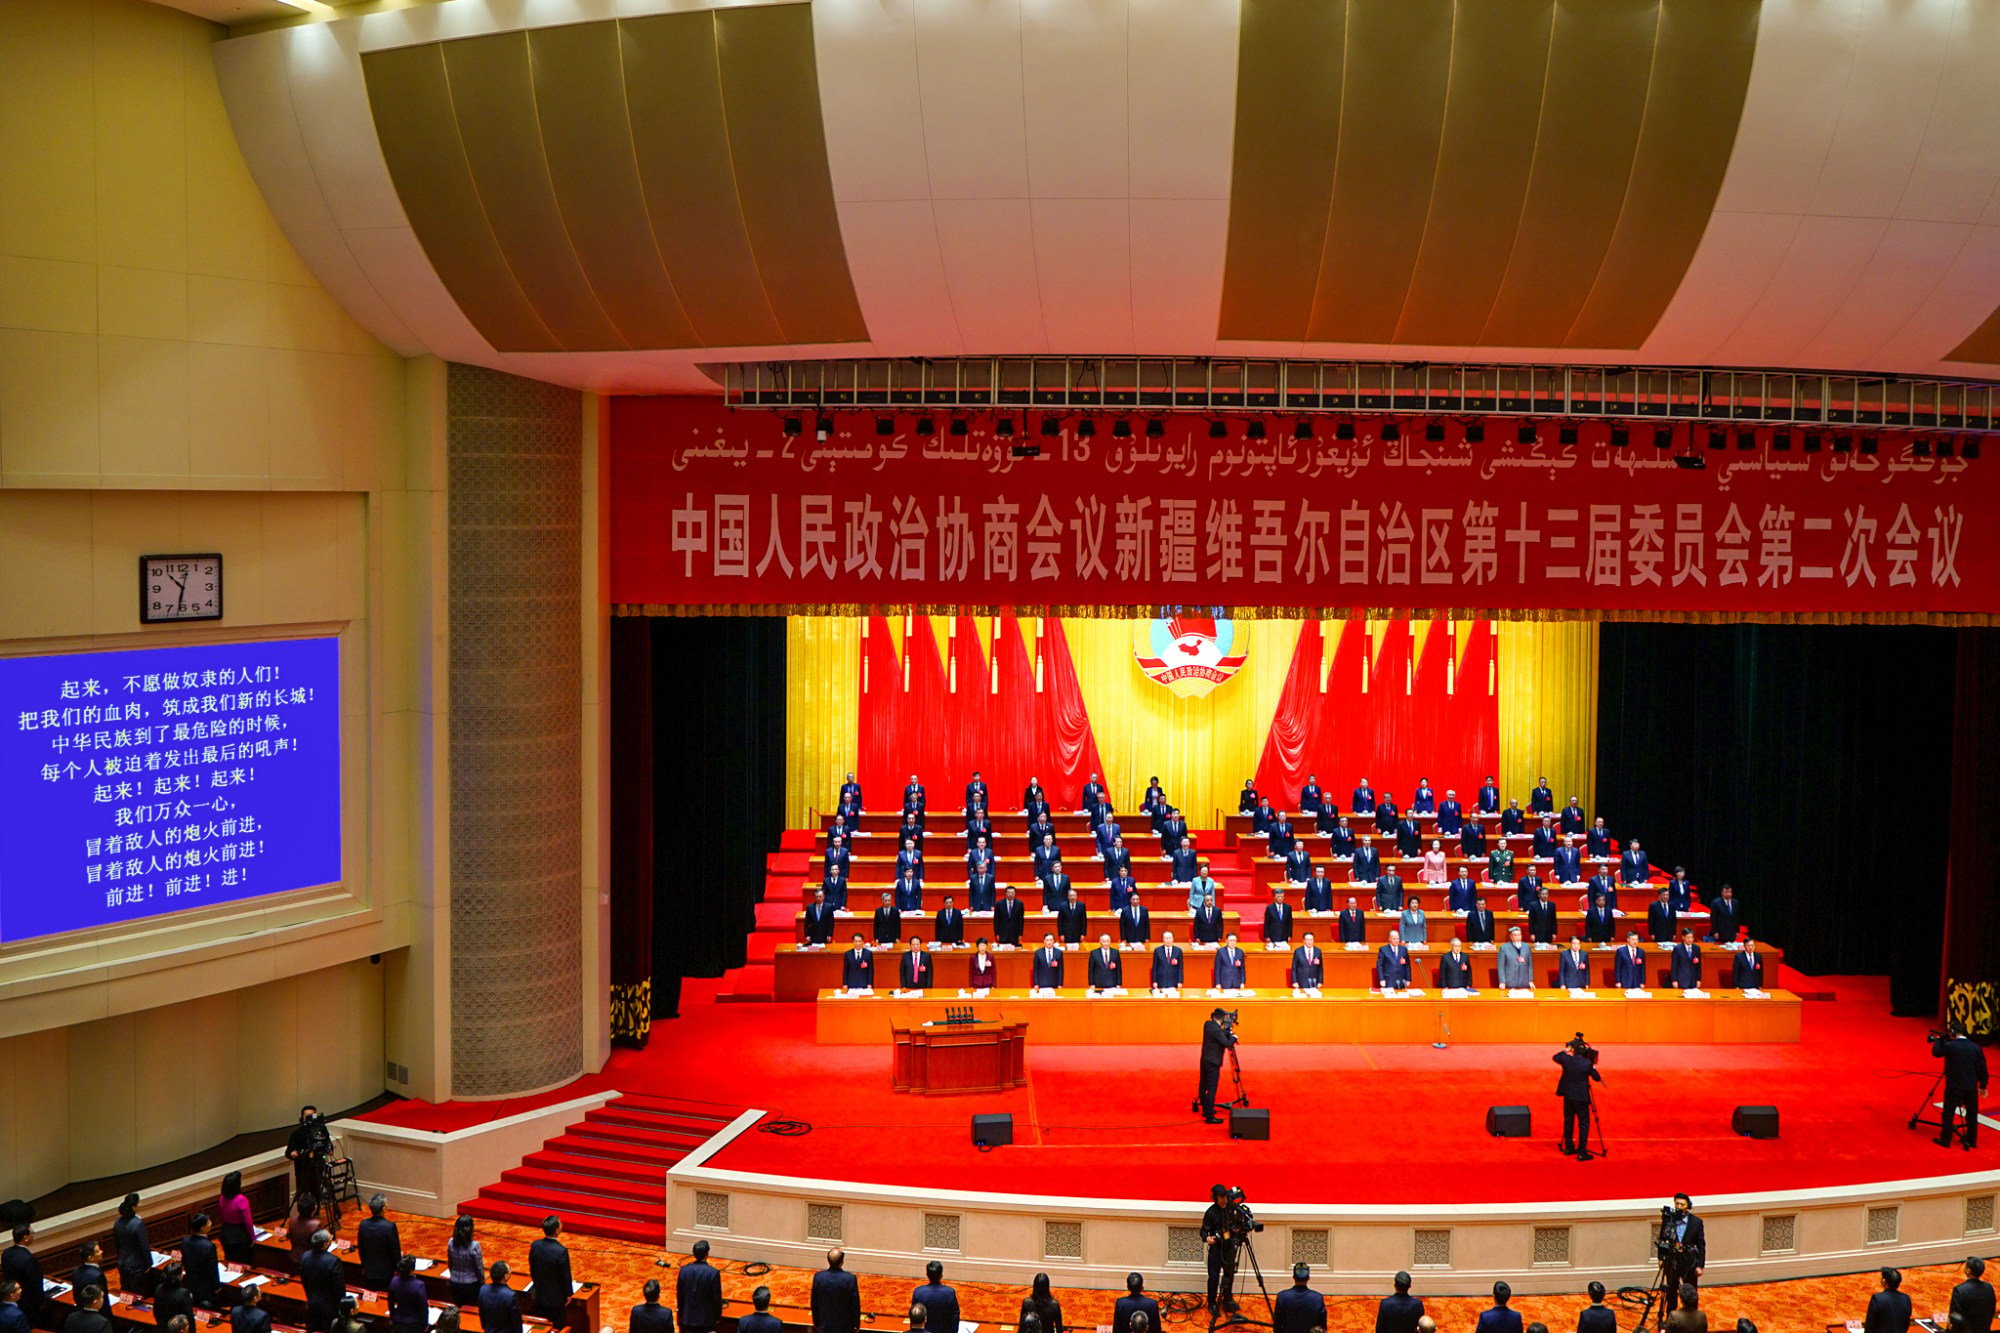 La regione cinese dello Xinjiang invita per la prima volta i media stranieri a partecipare agli incontri politici annuali, con l'obiettivo di migliorare la propria immagine